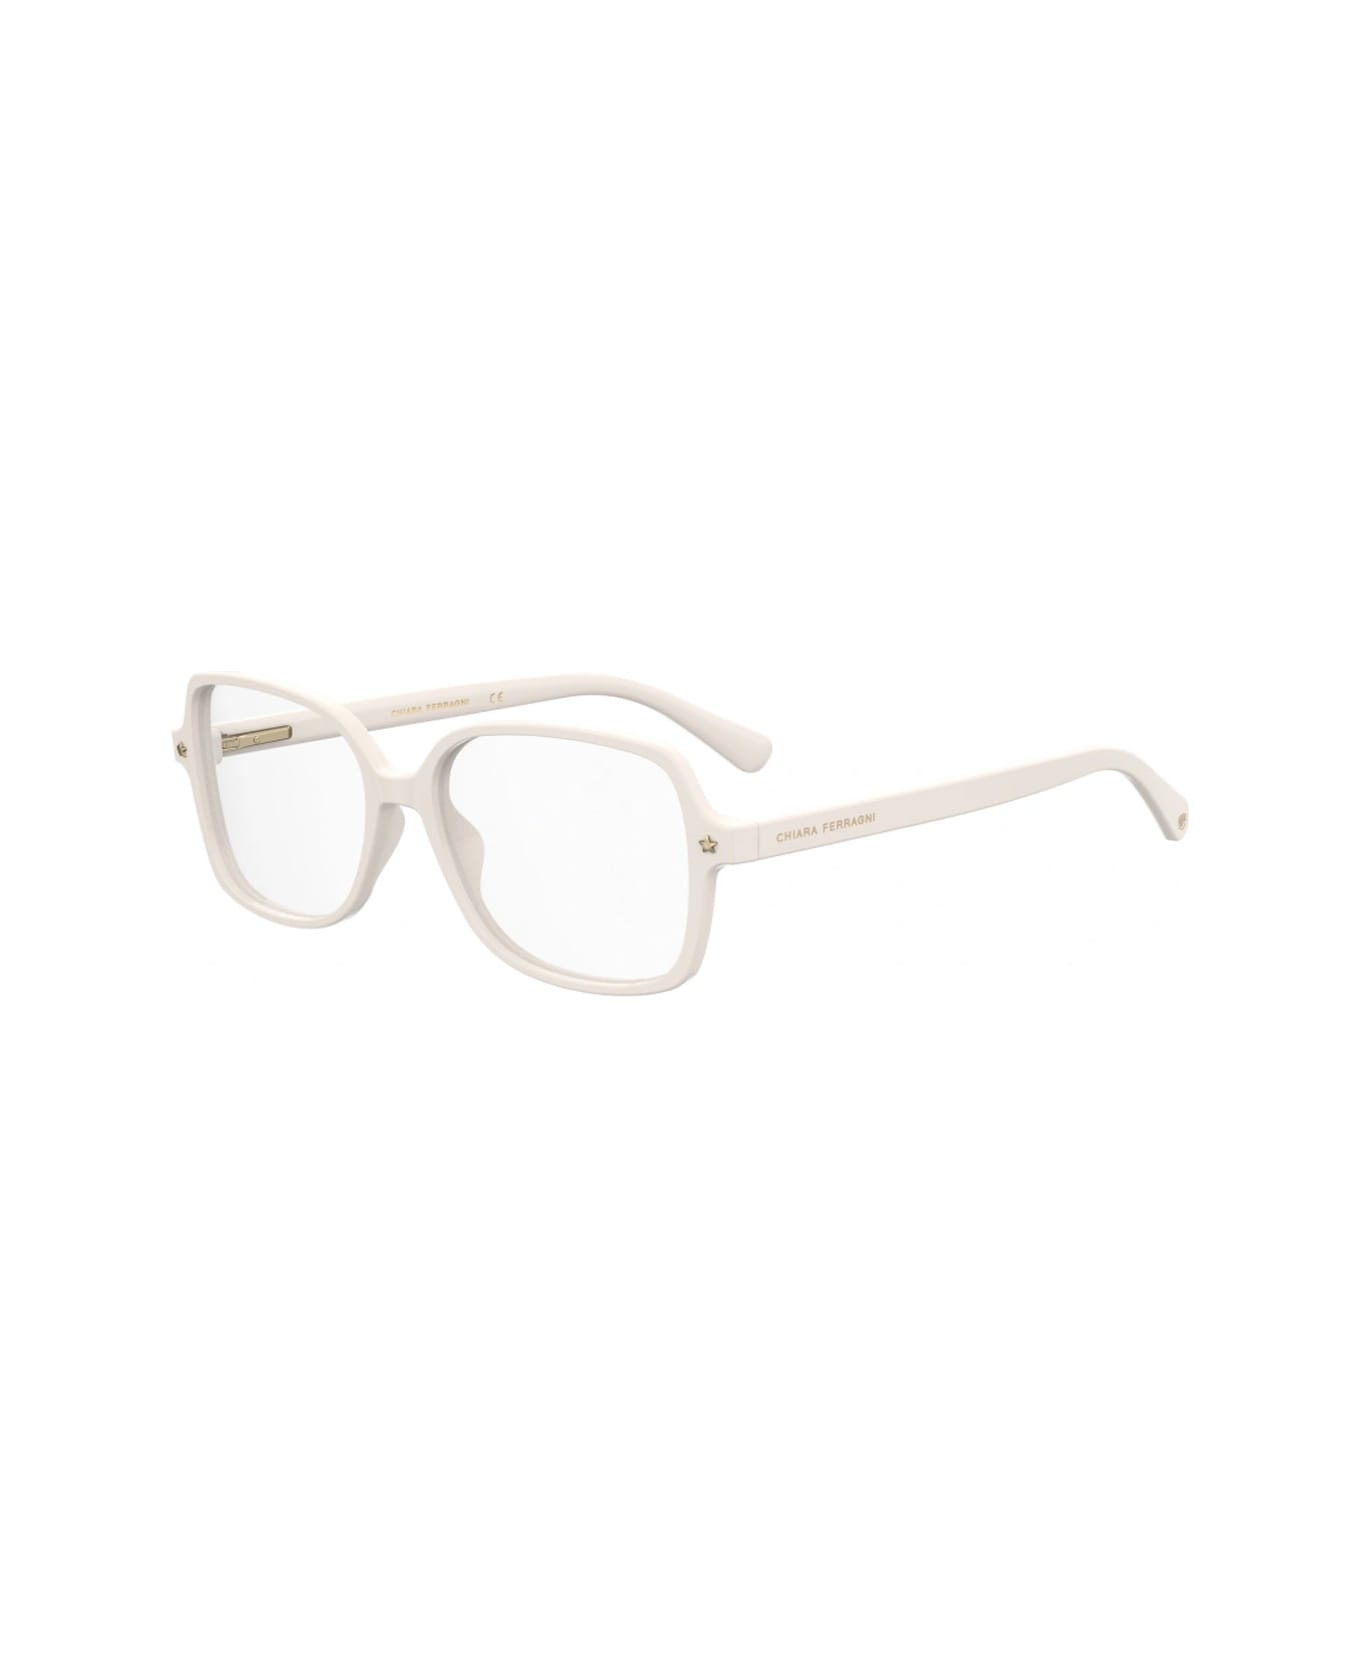 Chiara Ferragni Cf 1026 Vk6/16 White Glasses - Bianco